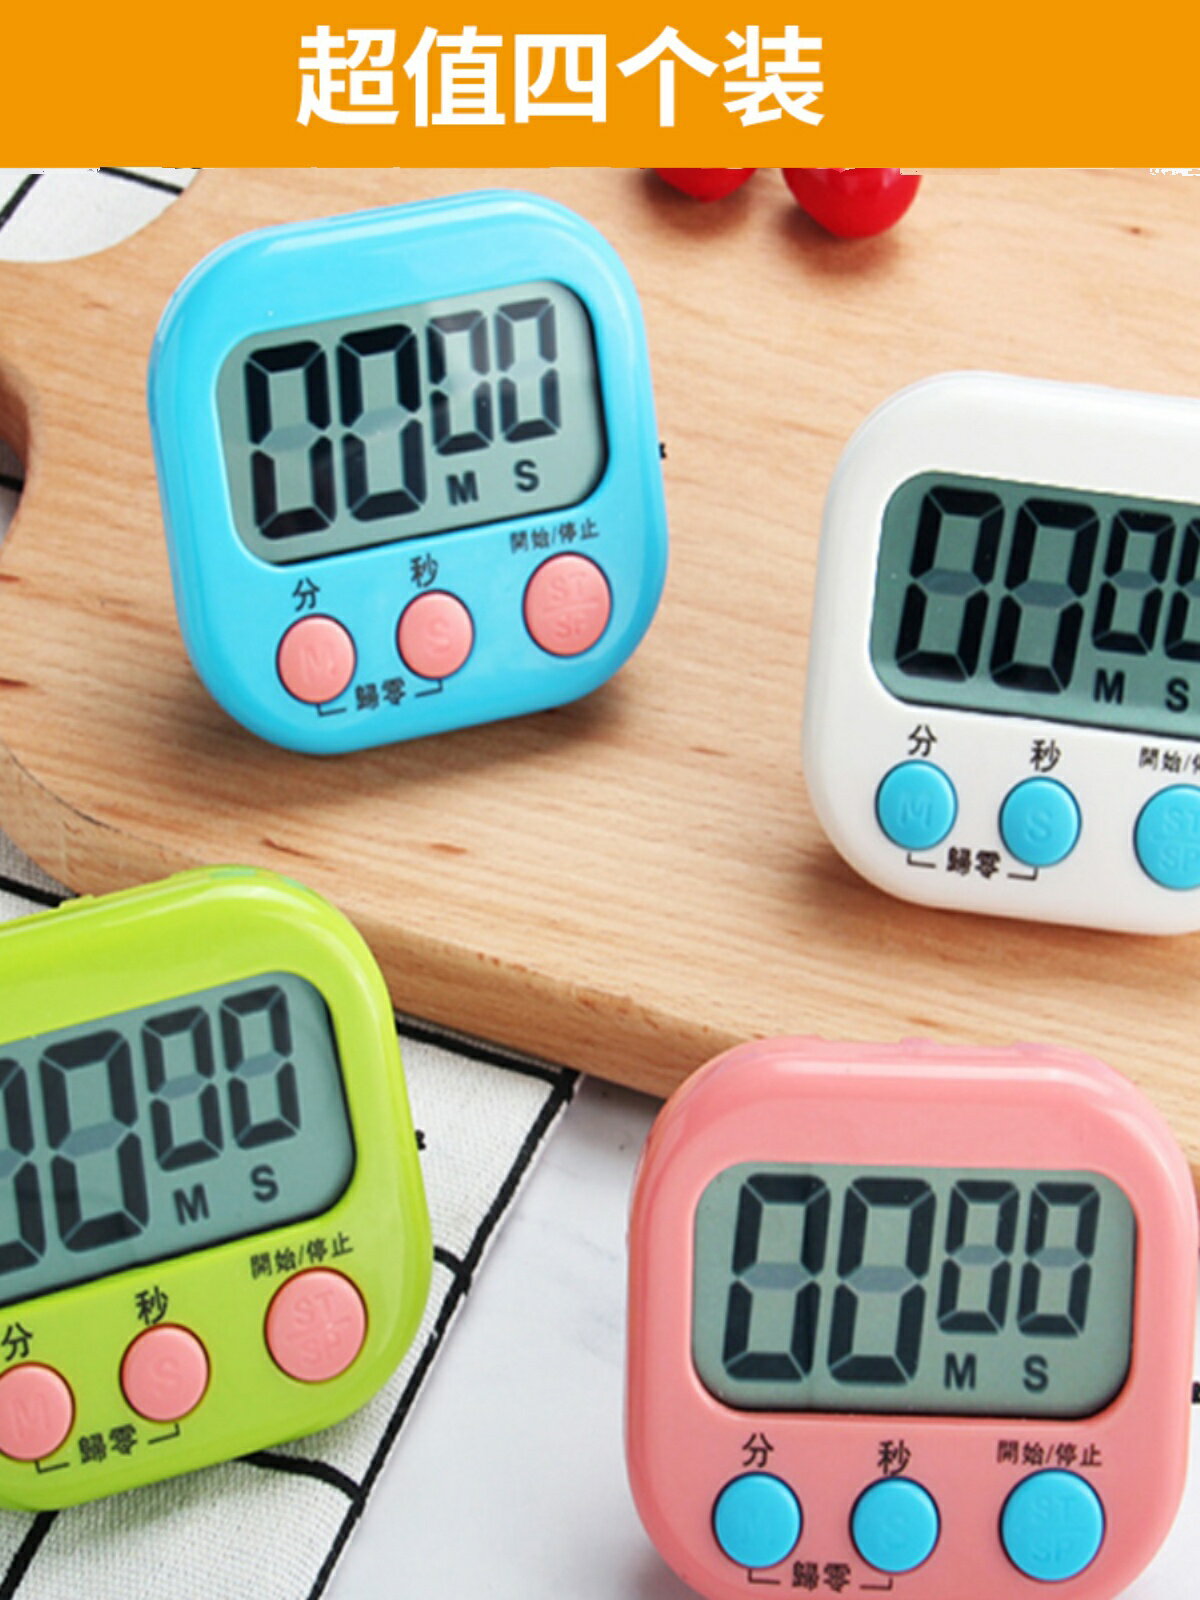 廚房定時計時器提醒做題時間管理學生學習考研烘焙可靜音鬧鐘表倒